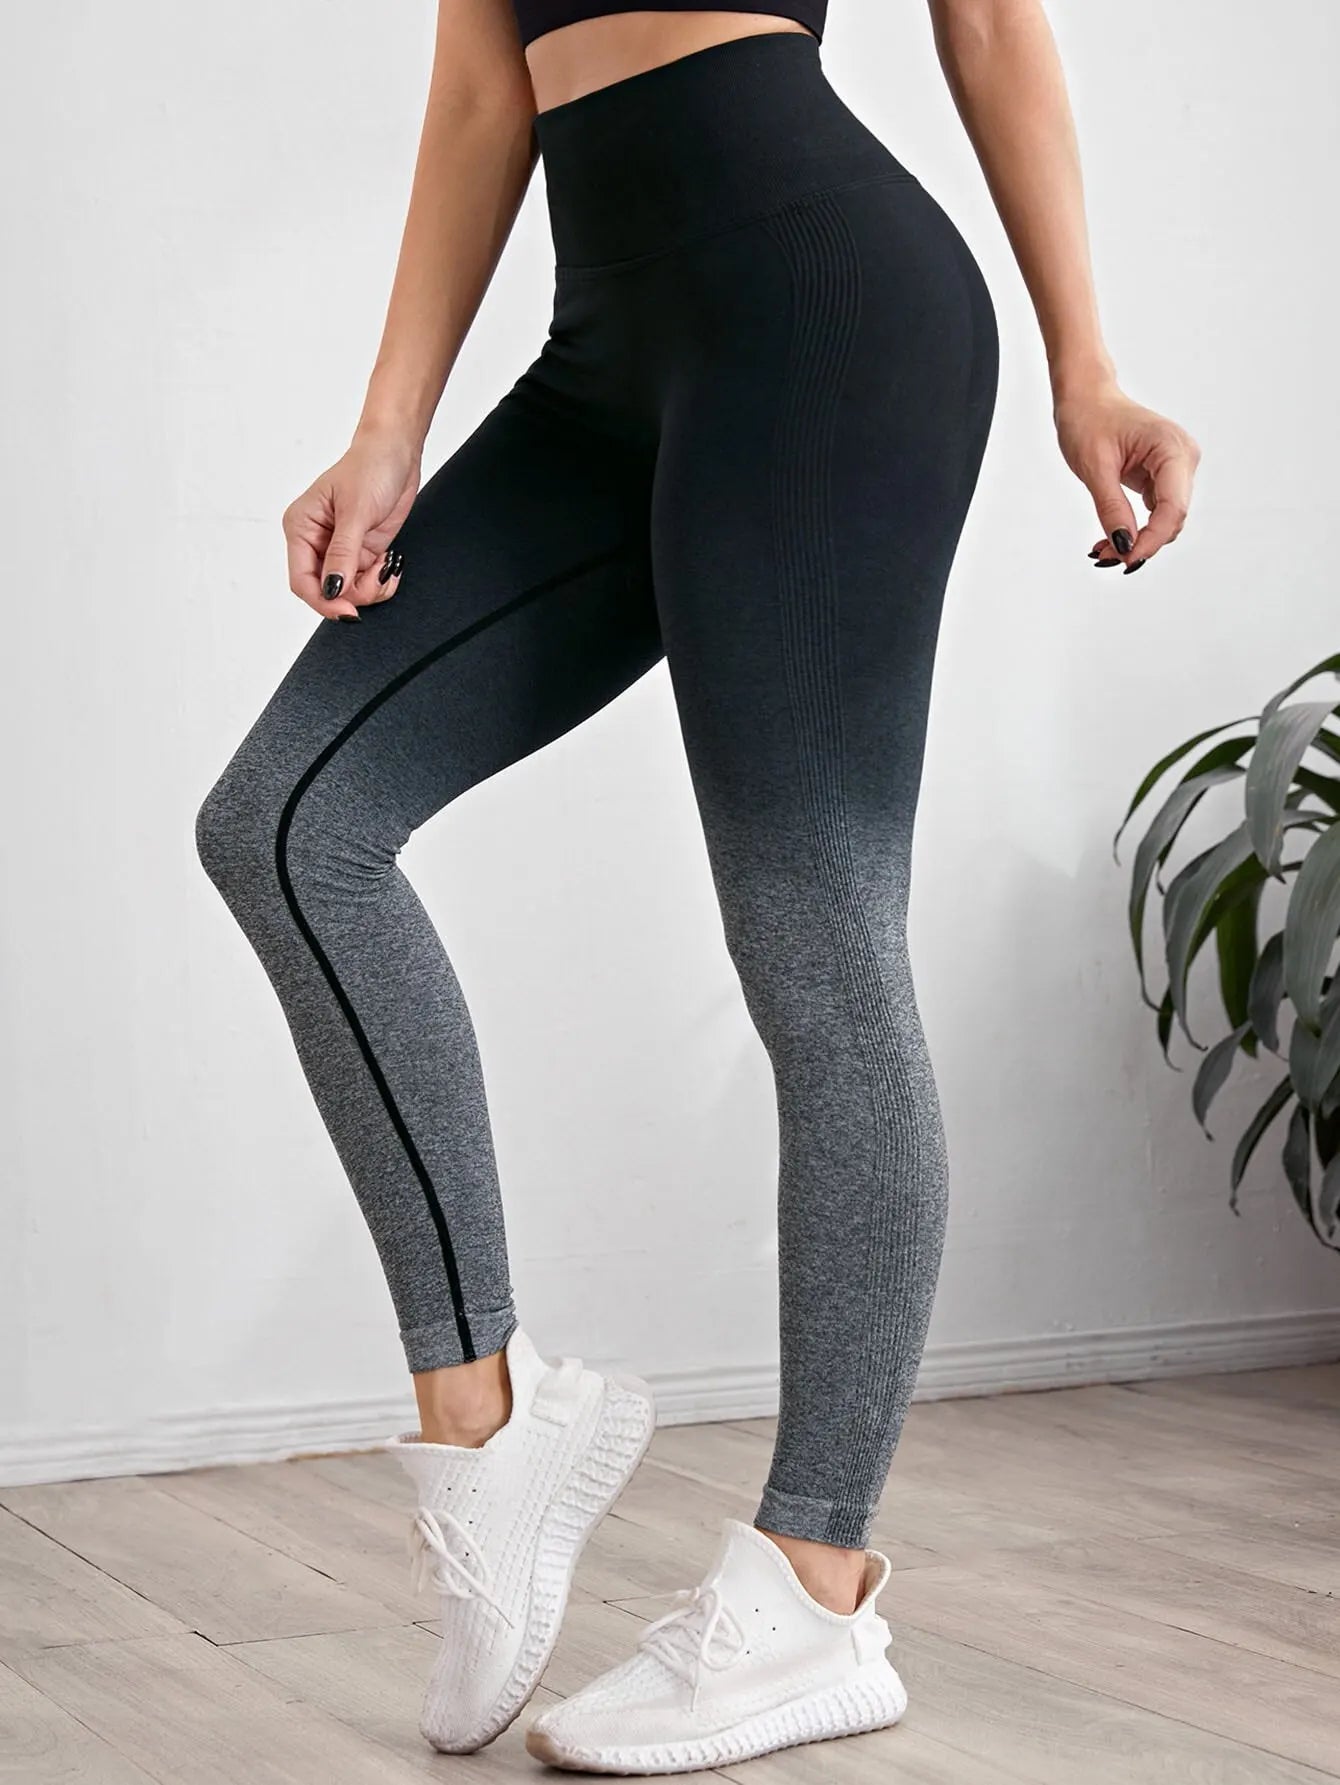 Gradient Color Energy Legging - Women's Workout Yoga Pants Yoga Shop 2018